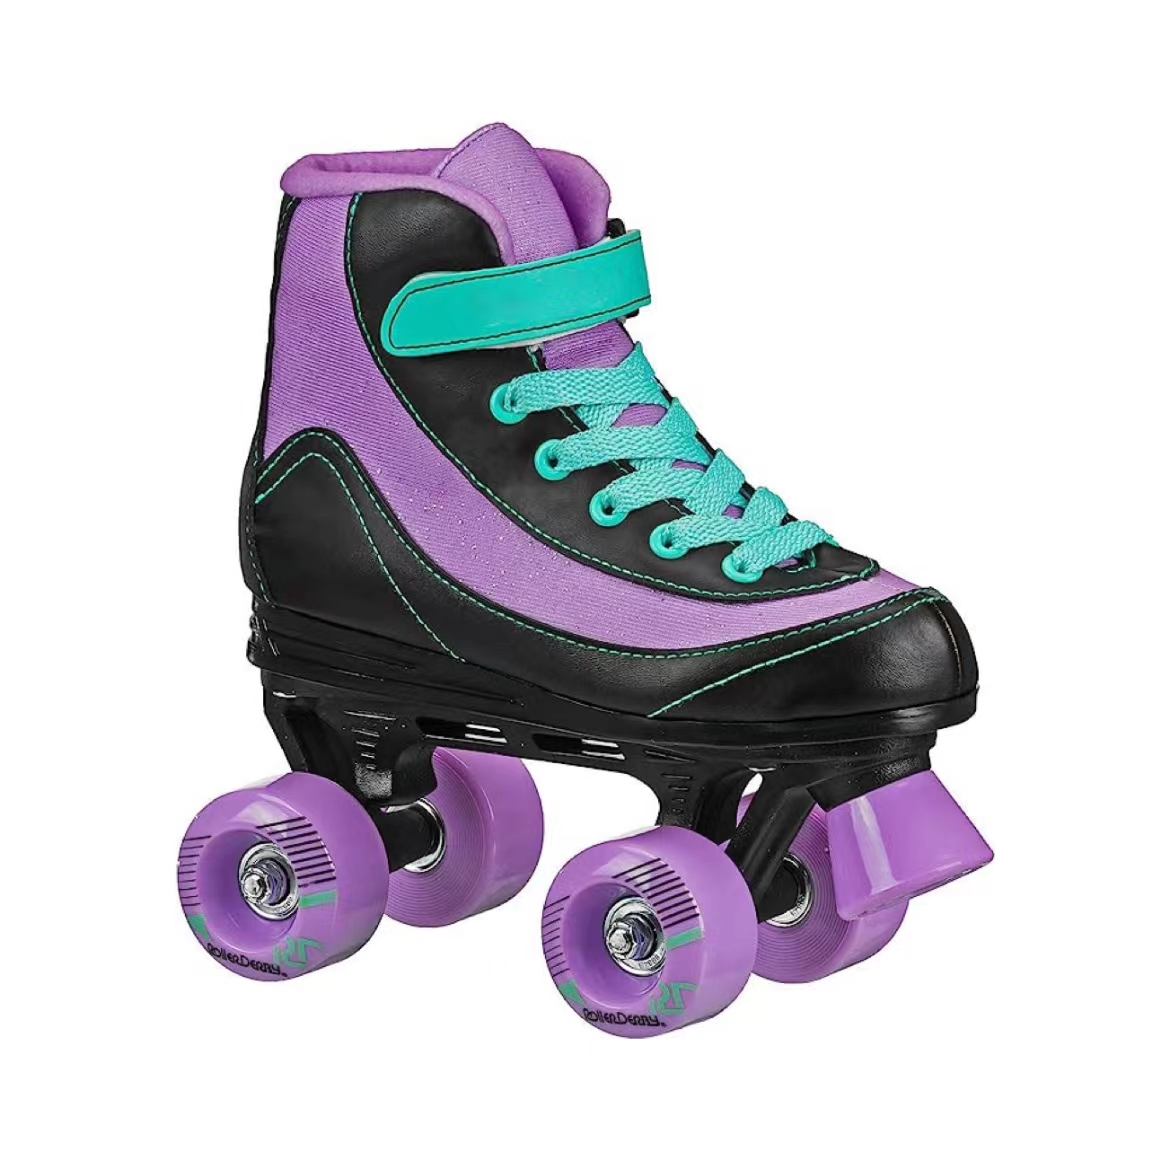 Fjouwer-wheel Skates foar jonge famkes